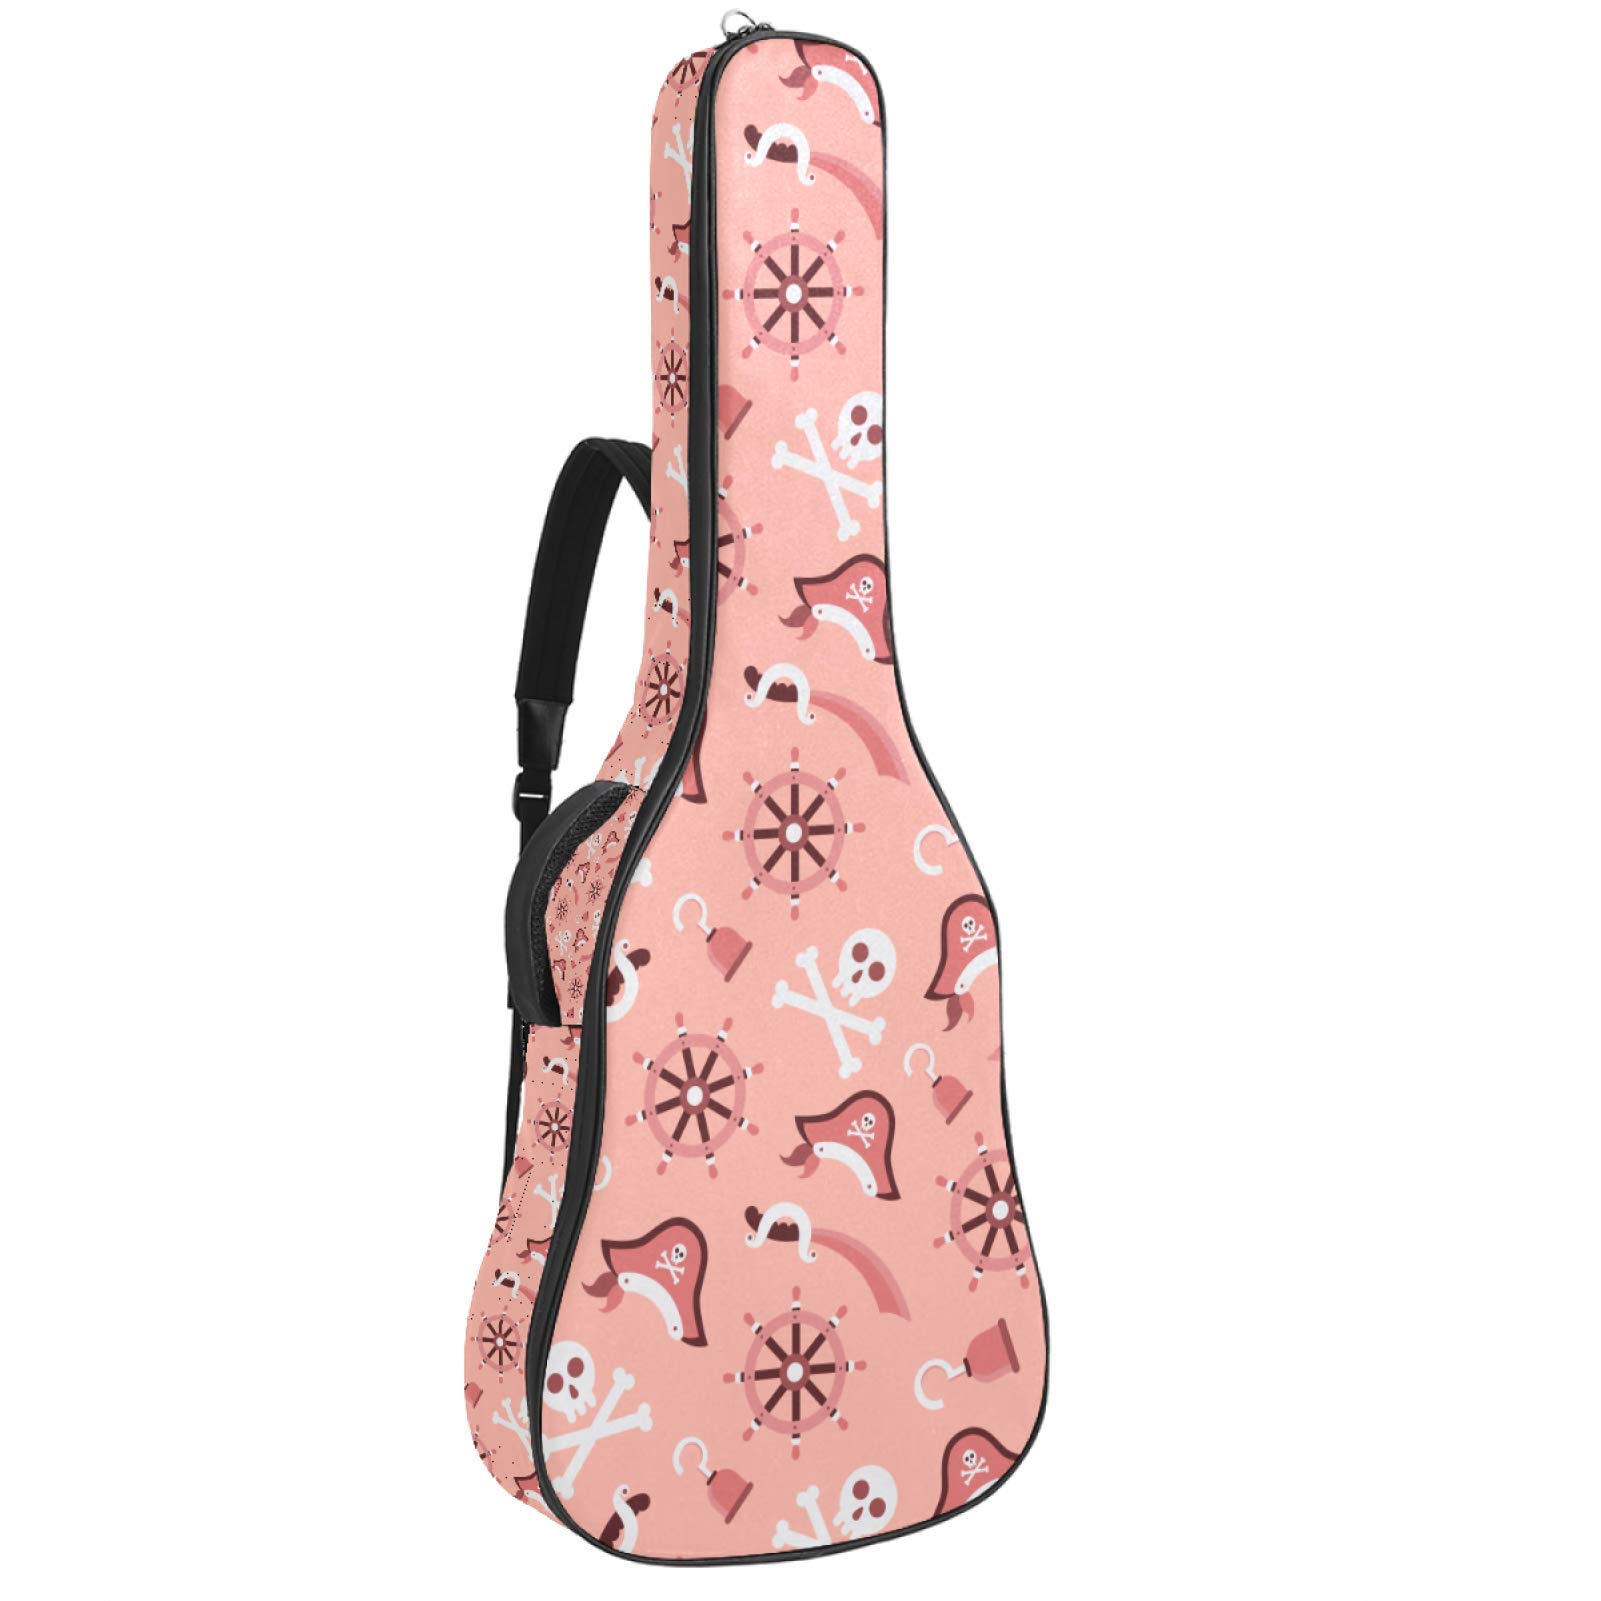 Gitarrentasche mit Reißverschluss, wasserdicht, weich, für Bassgitarre, Akustik- und klassische Folk-Gitarre, rosa Piraten-Element